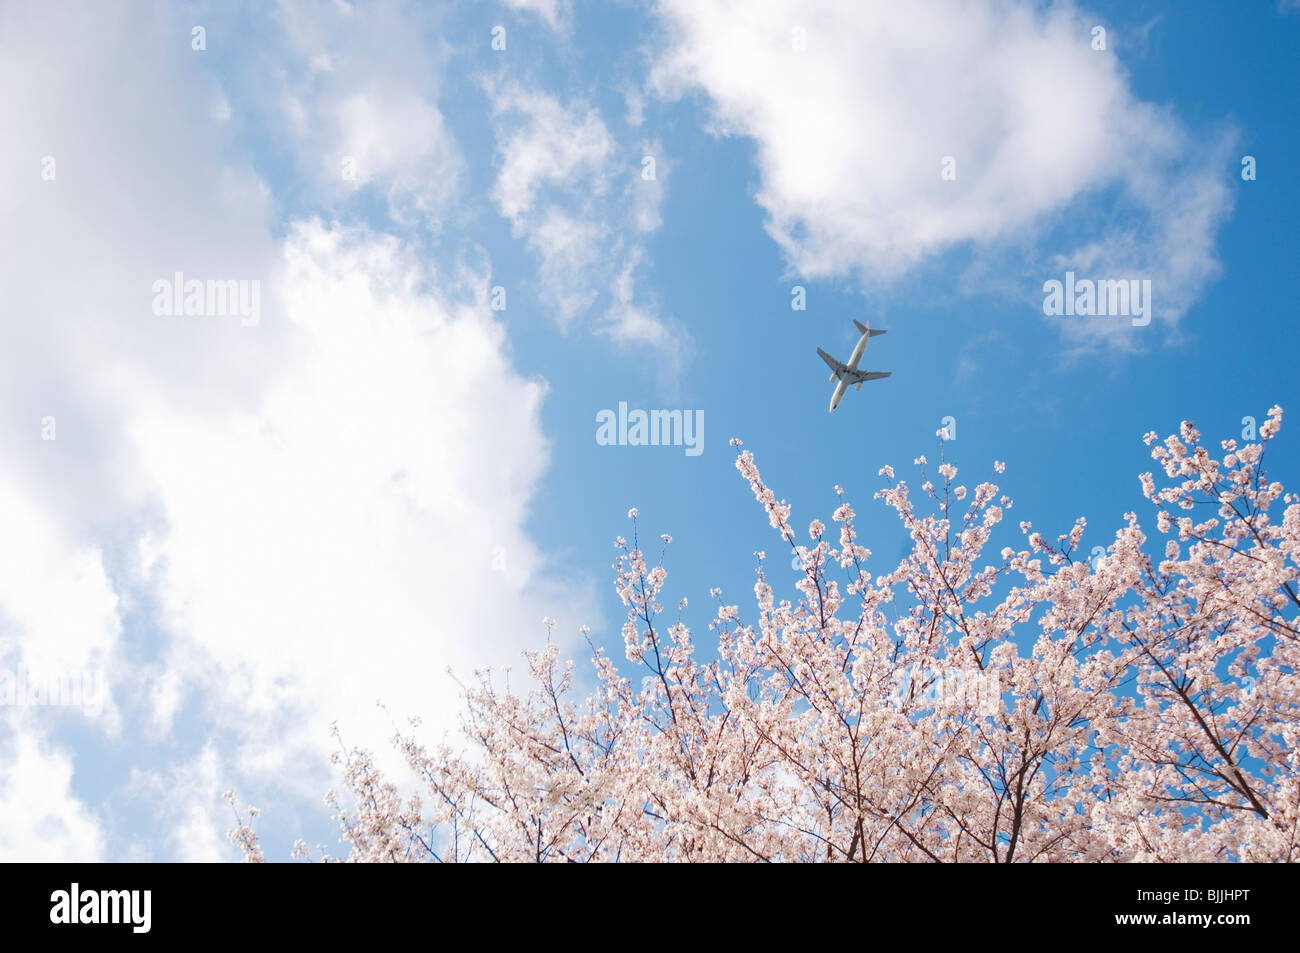 Avion voler à travers une rose bleu ciel nuageux au-dessus de fleurs de cerisier Banque D'Images